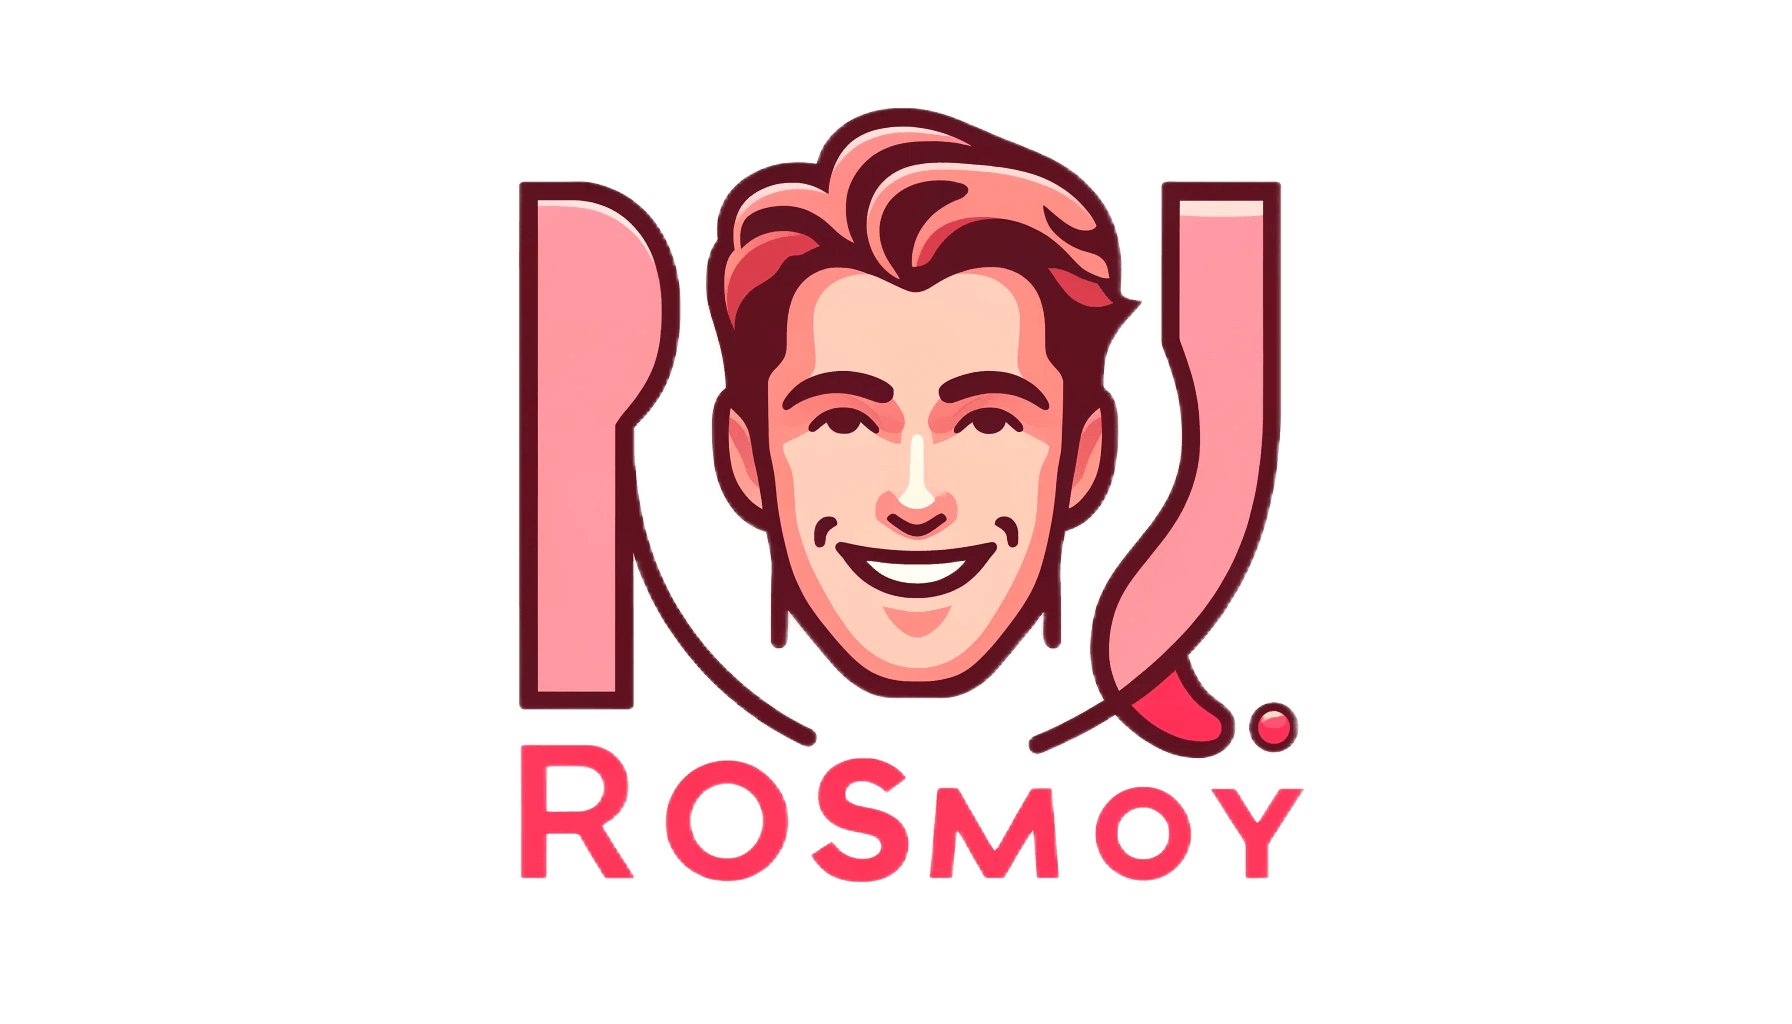 Rosmoy – A juicy world